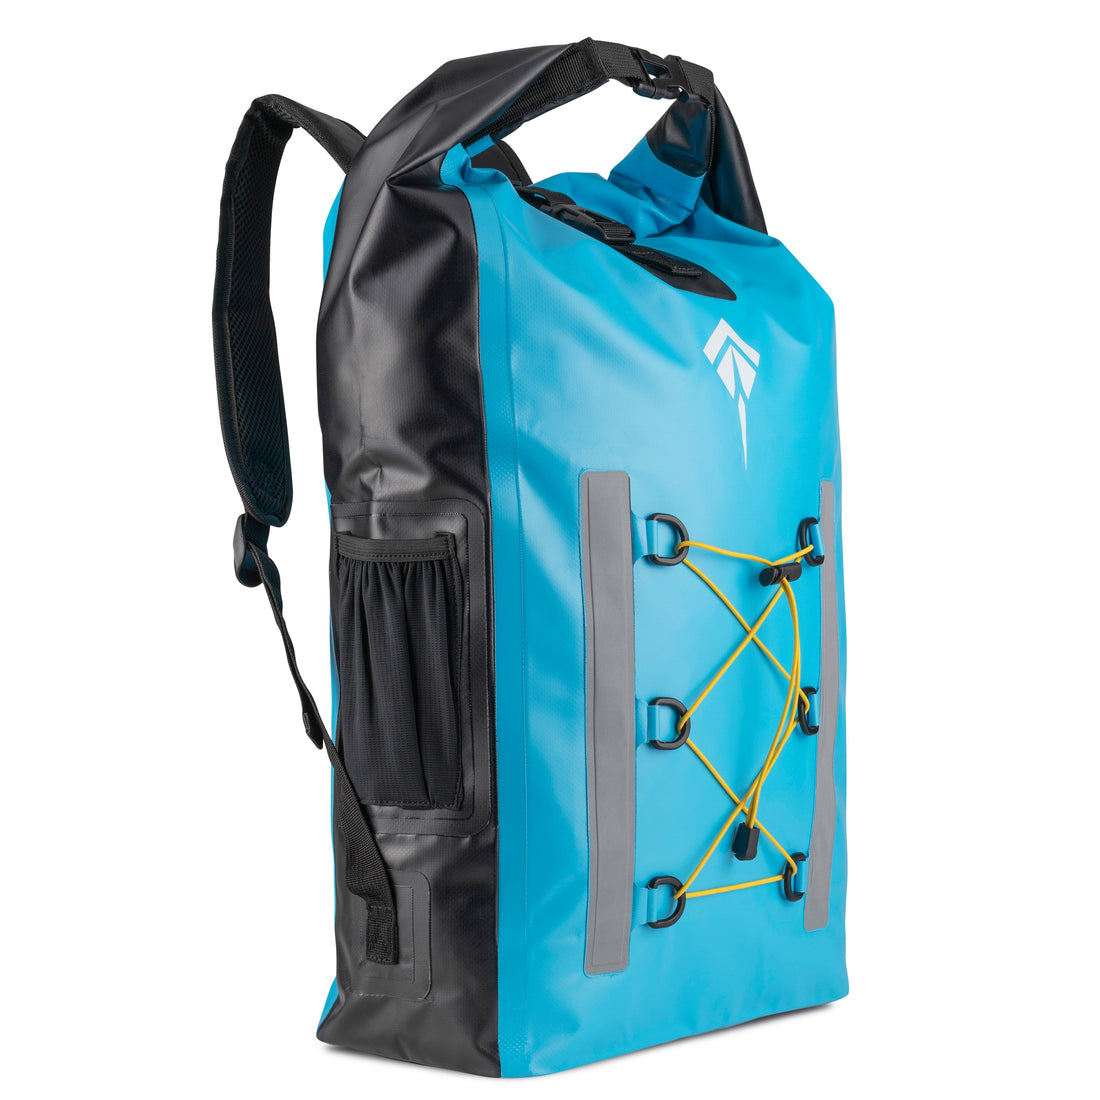 Waterproof Backpacks And Bags